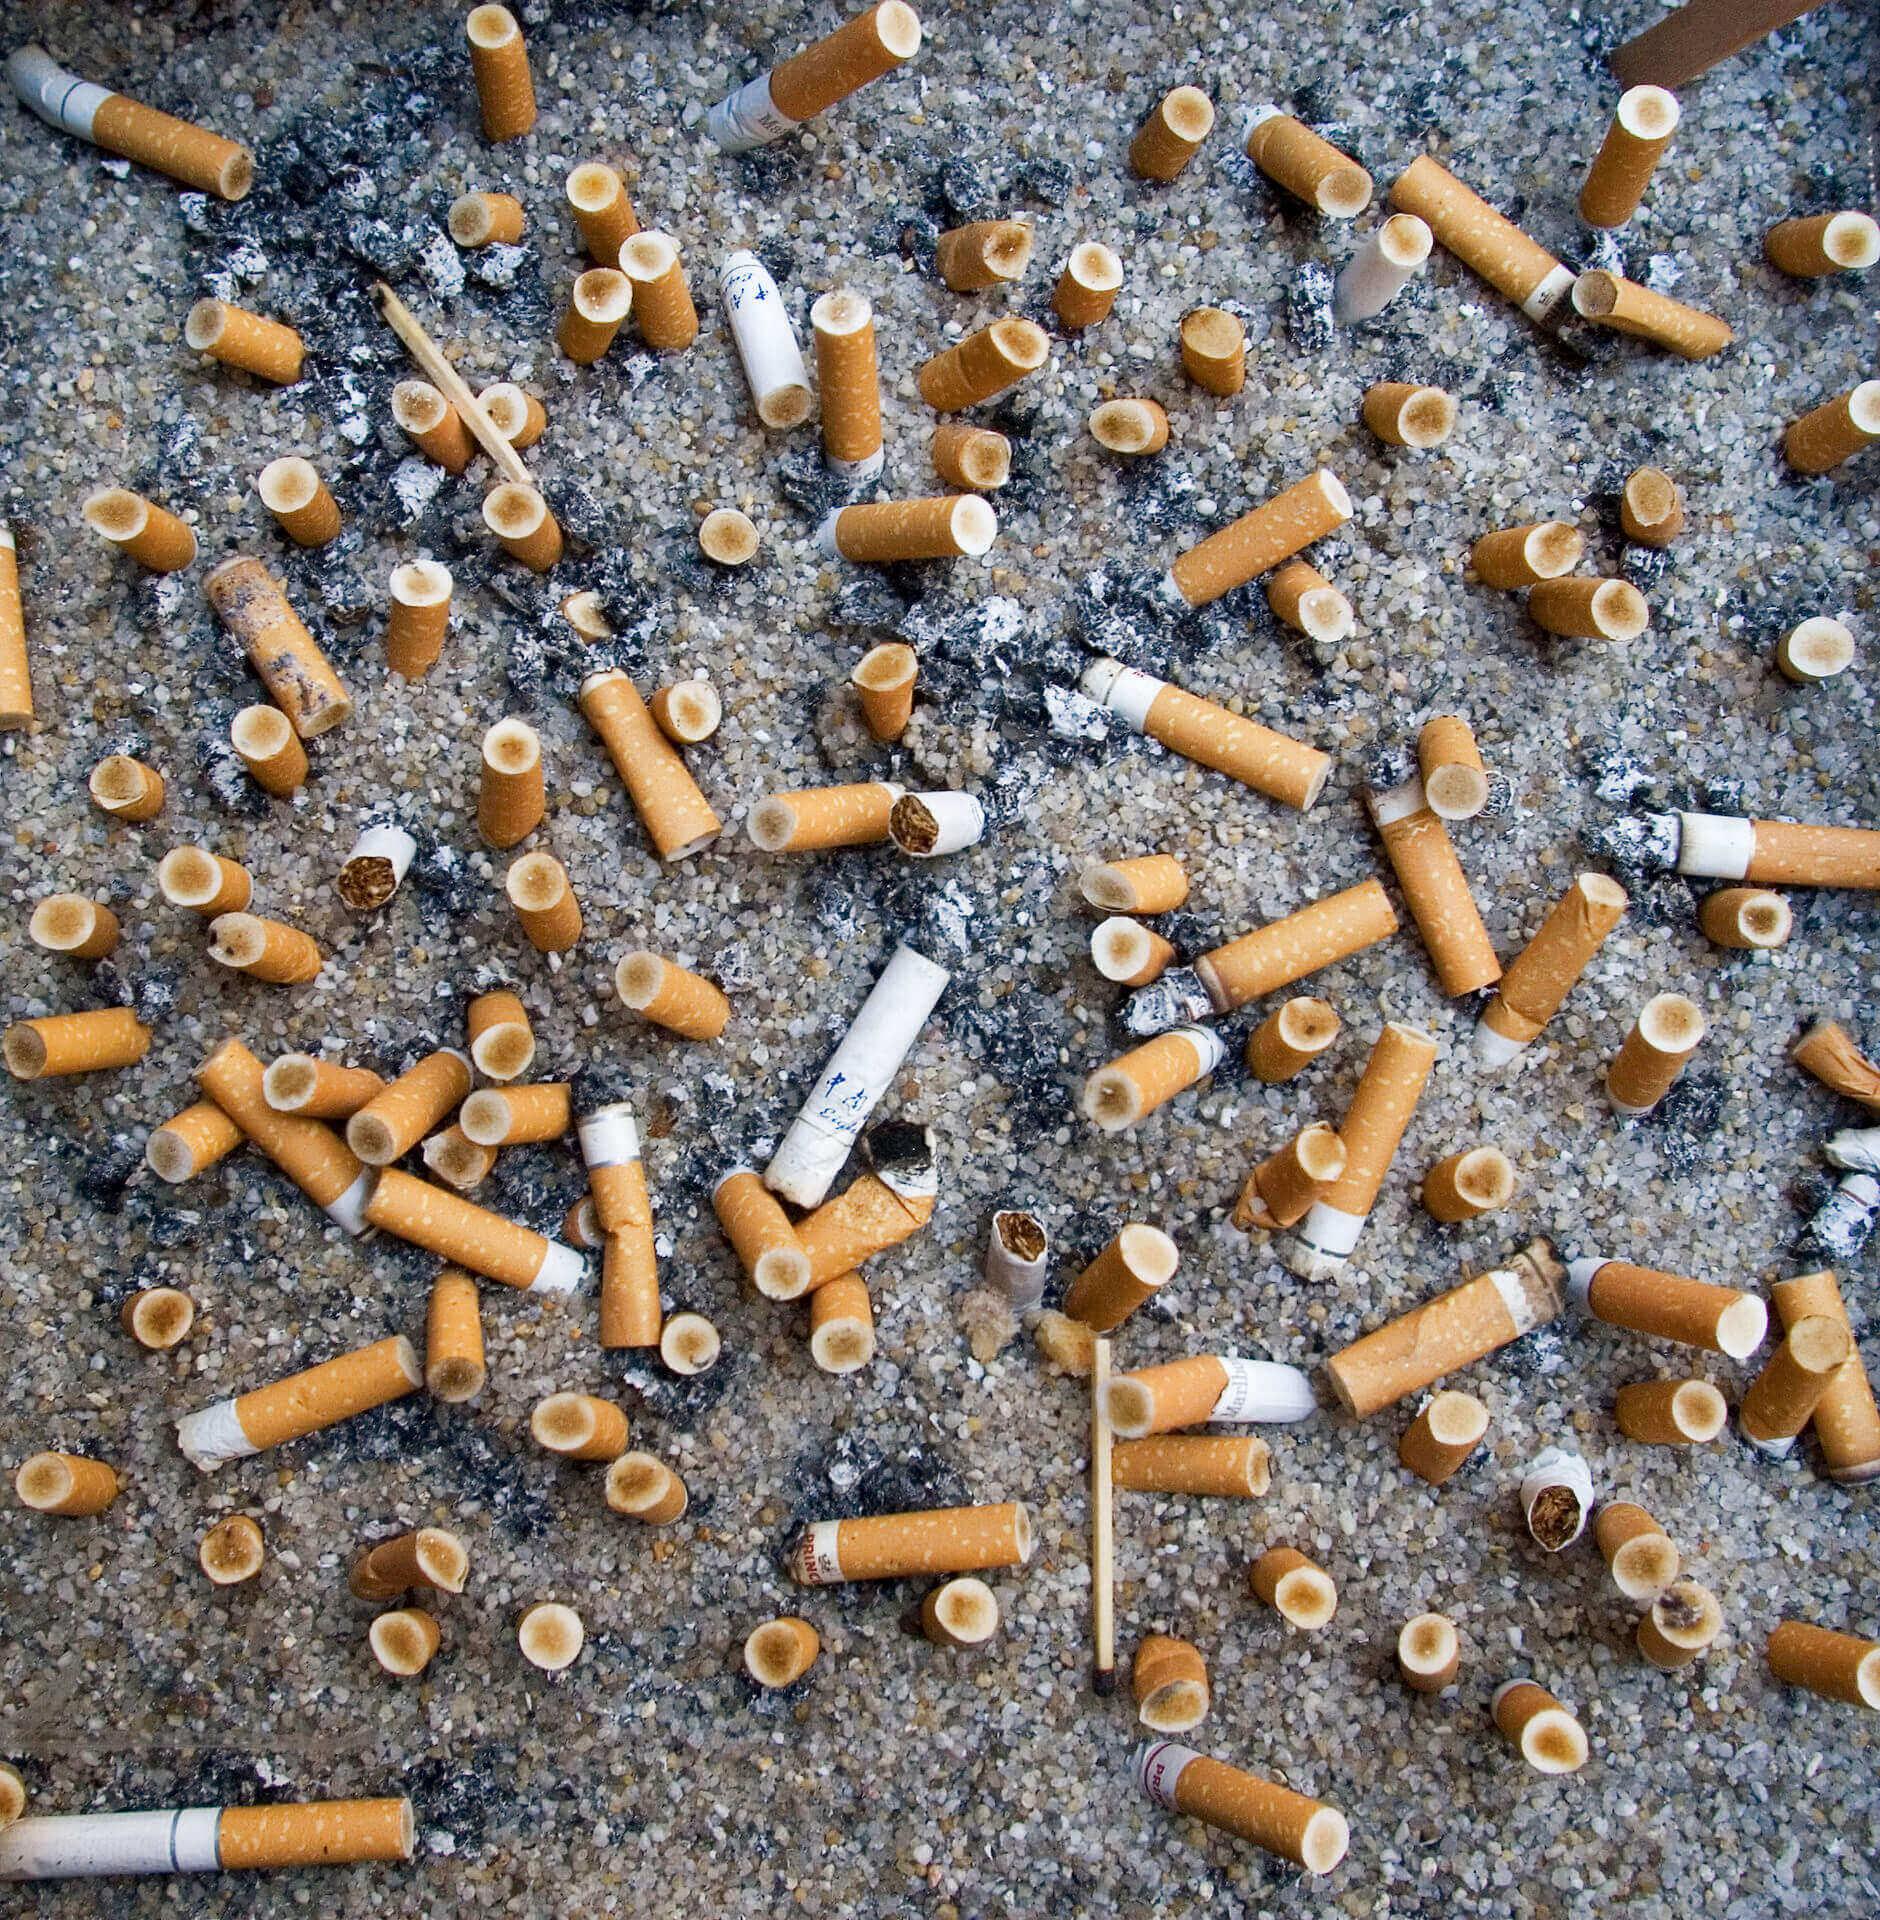 Ifølge en opgørelse fra Miljøstyrelsen er syv ud af ti stykker henkastet affald et cigaretskod. Fra næste år får cigartproducenterne et udvidet producentansvar og flere former for plastaffald følger i de kommende år efter. Producenterne kommer til at betale kommunerne for at rydde op.